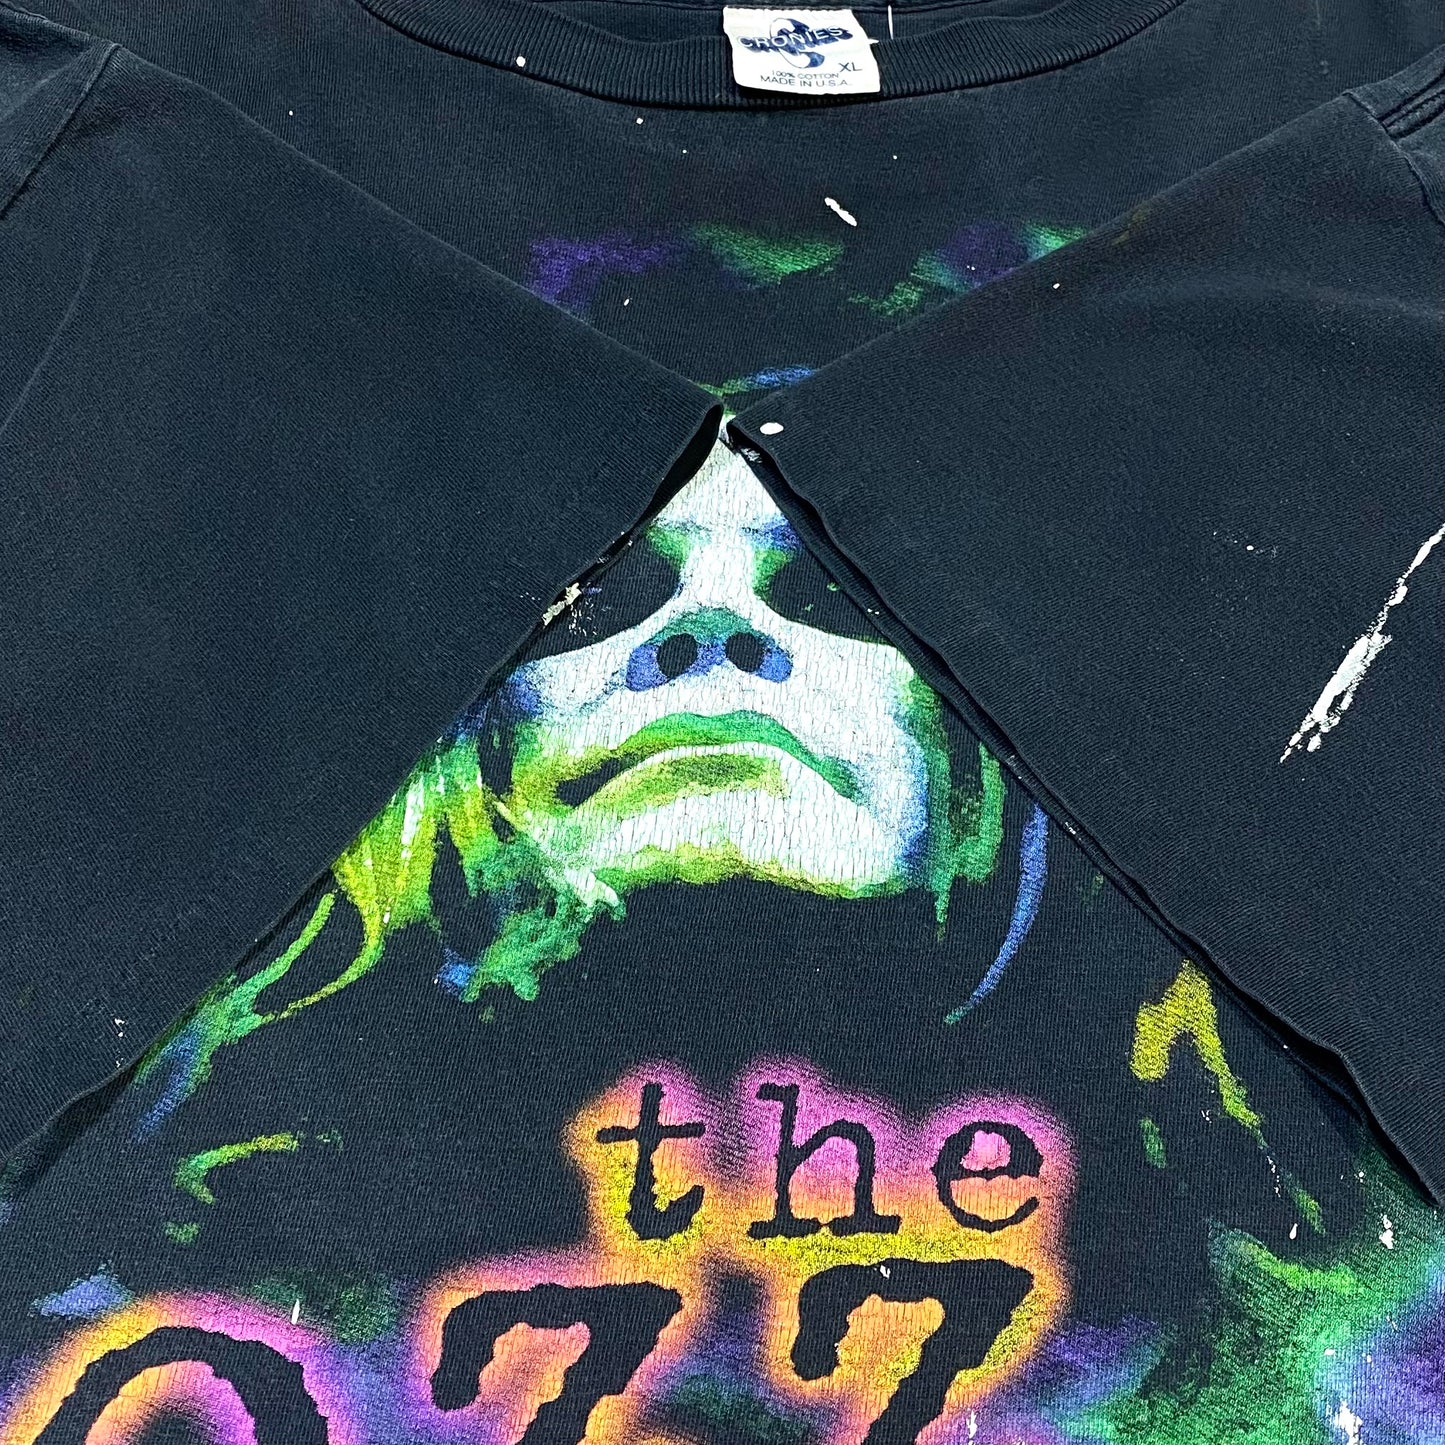 90's Ozzy Osbourne "the Ozzfest" live t-shirt